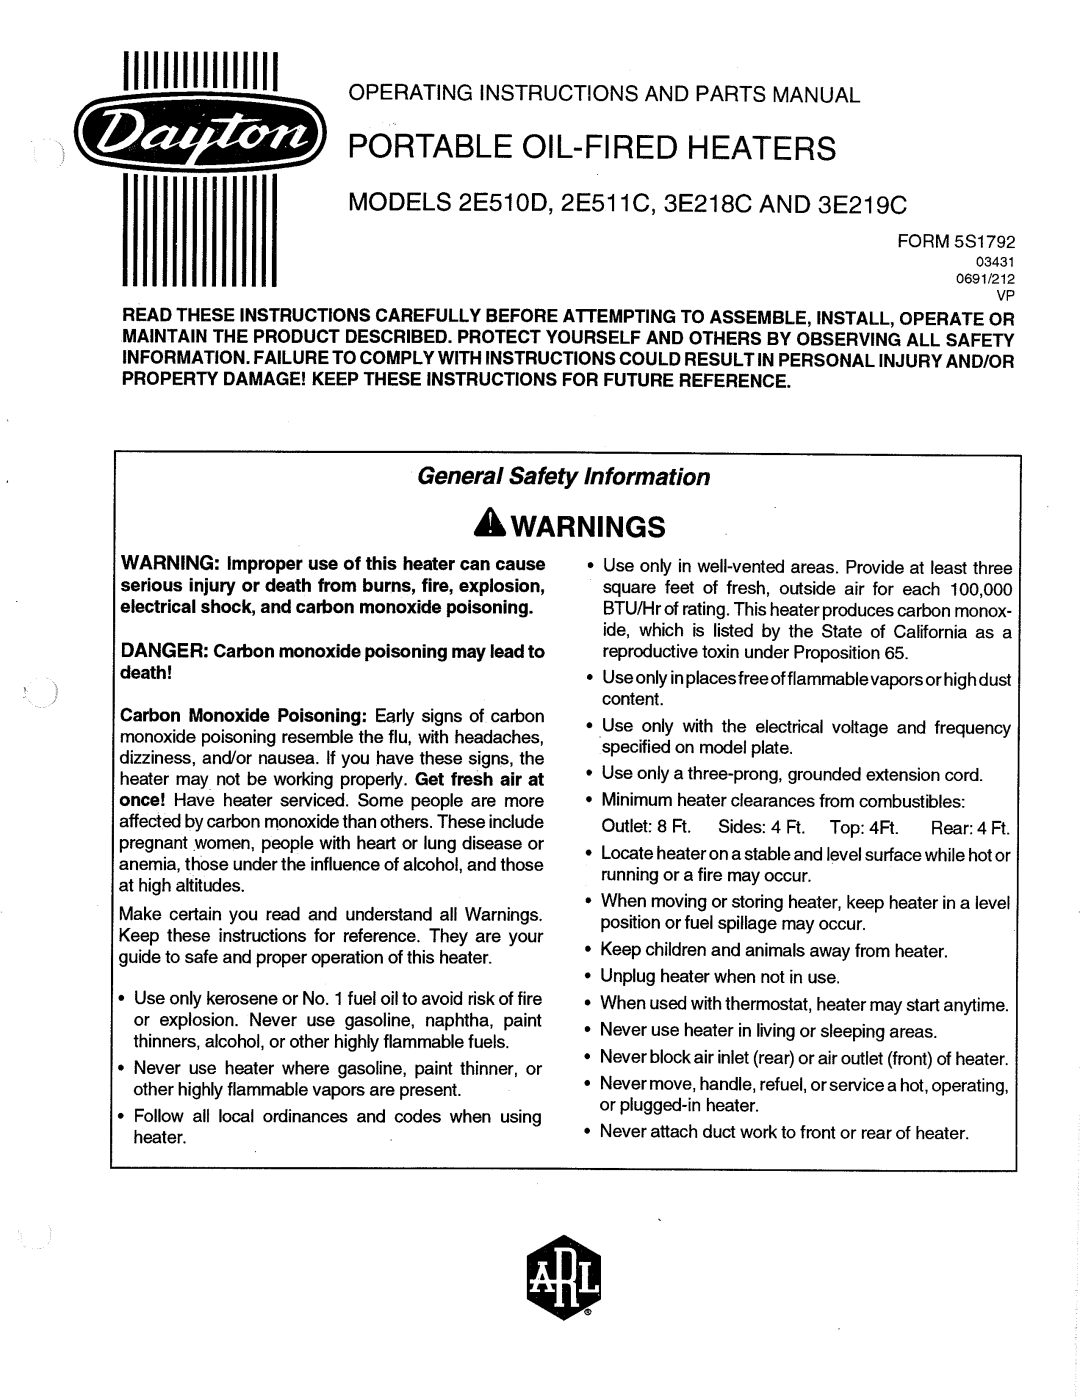 Dayton 2E511C manual 